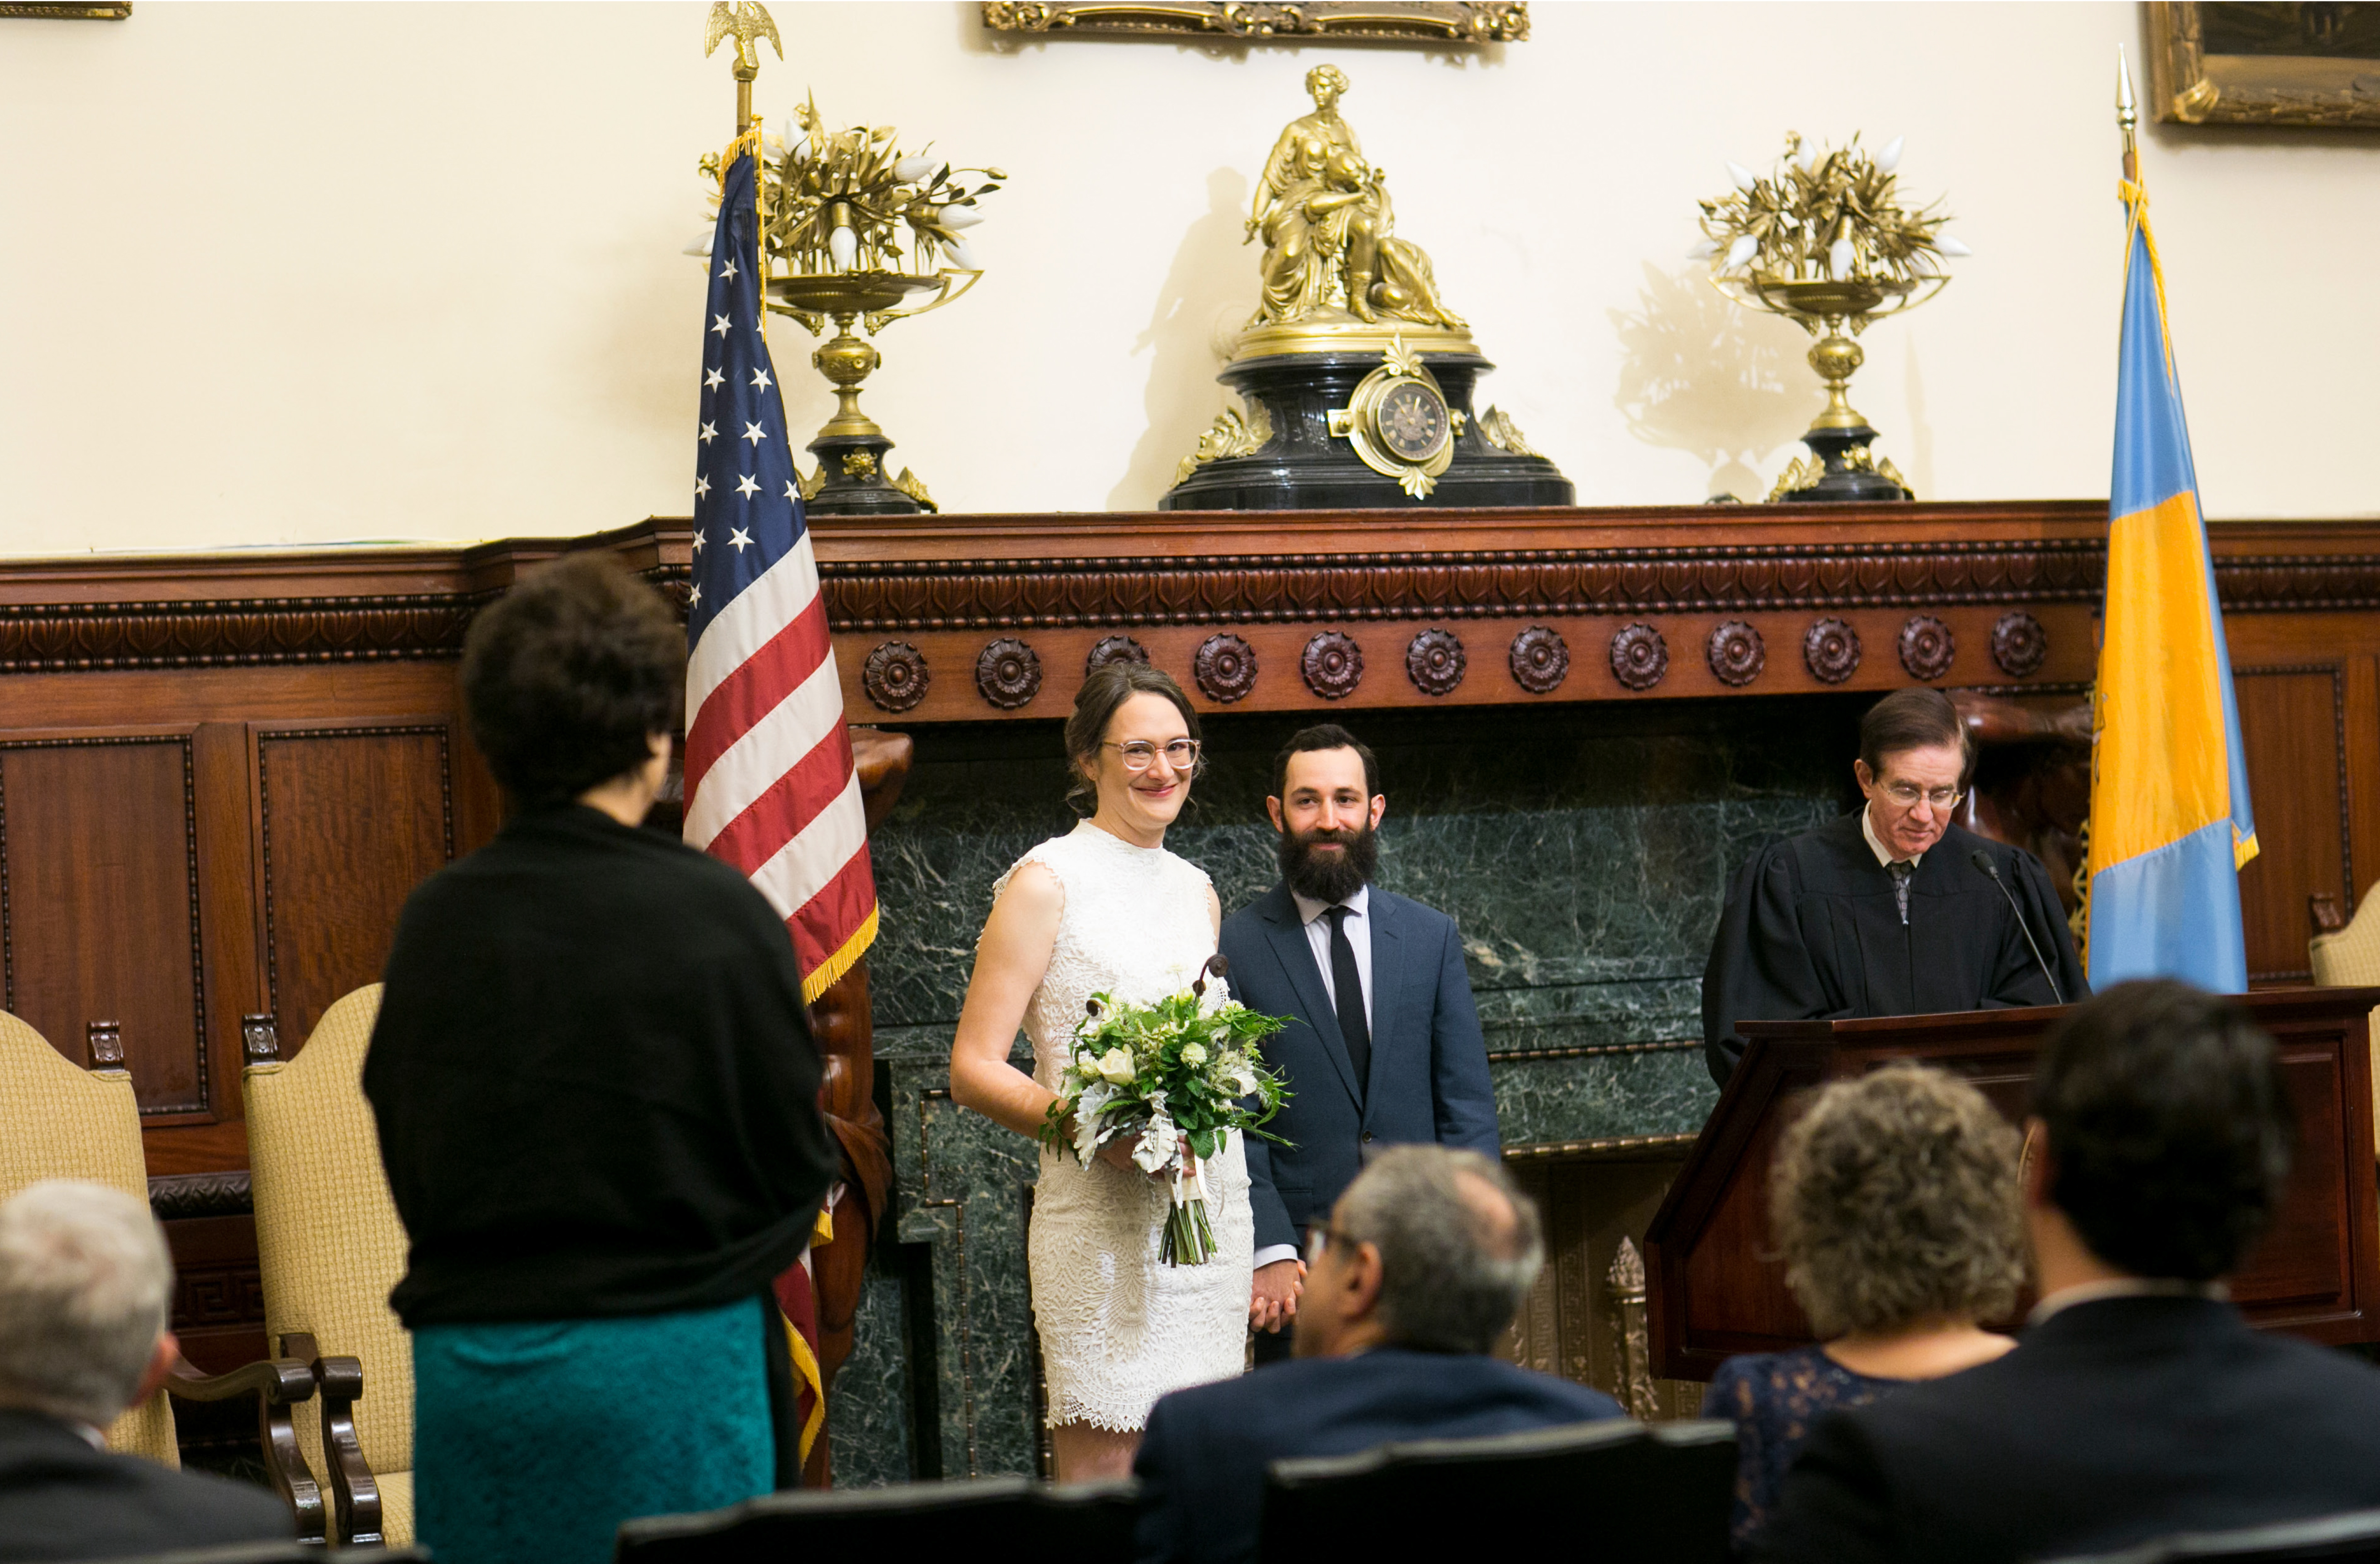 Philadelphia City Hall Elopement, Mayors reception room, wedding ceremony, speeches